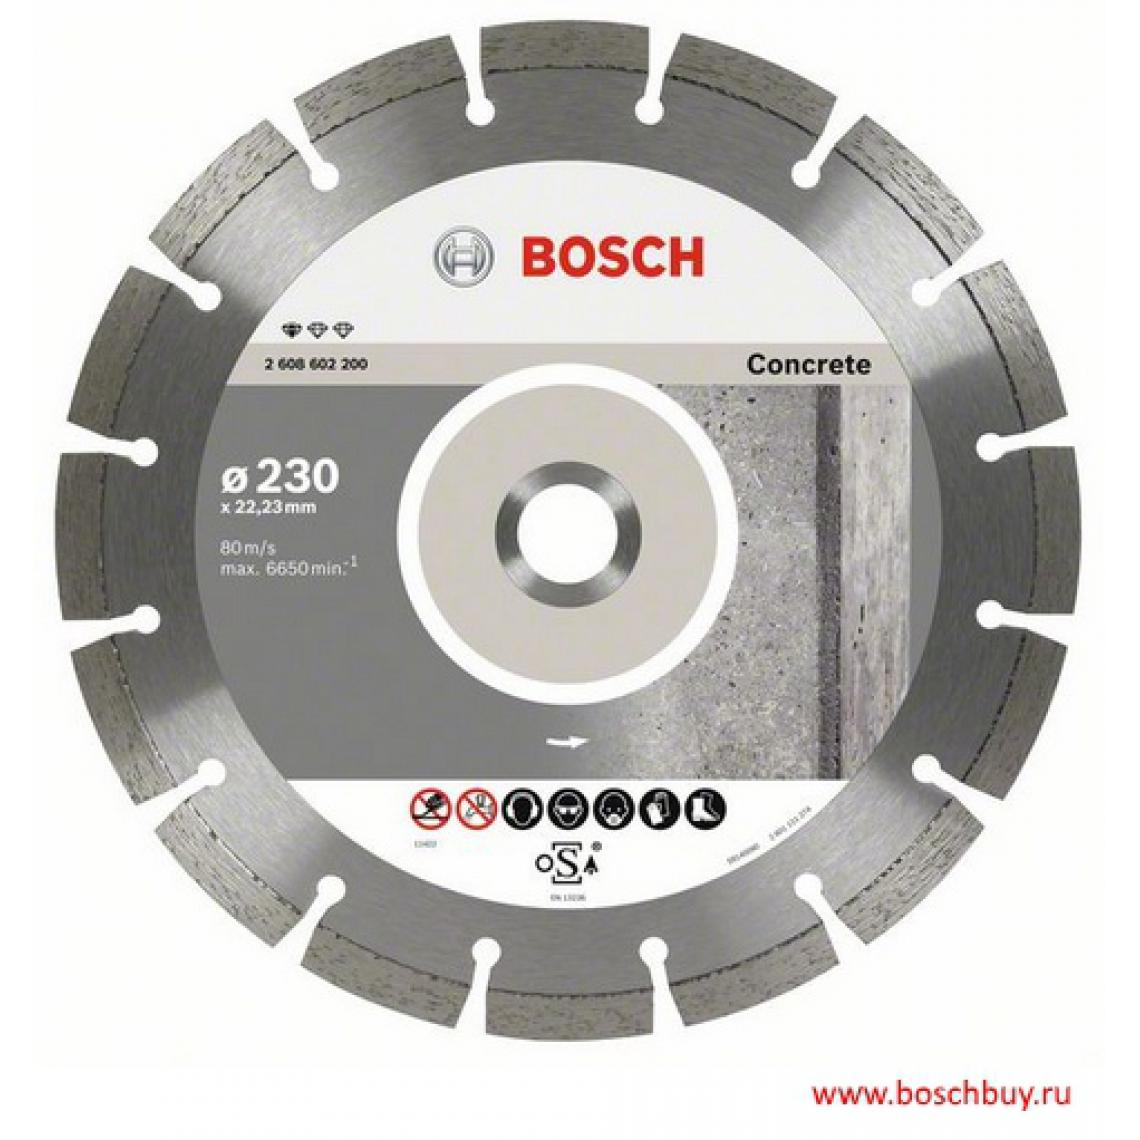 Bosch - Standard for Concrete - Accessoires ponçage